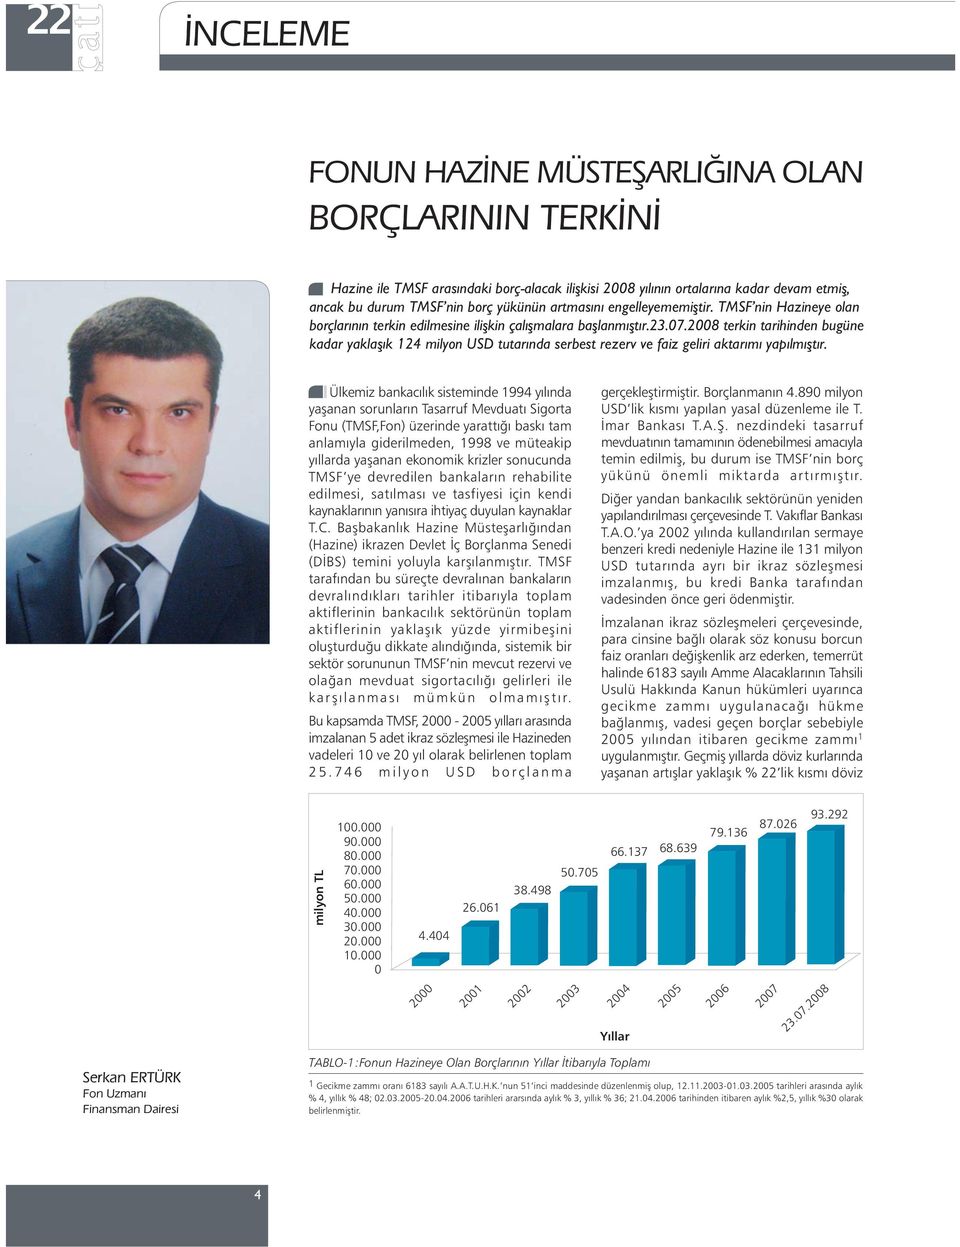 2008 terkin tarihinden bugüne kadar yaklaþýk 124 milyon USD tutarýnda serbest rezerv ve faiz geliri aktarýmý yapýlmýþtýr.